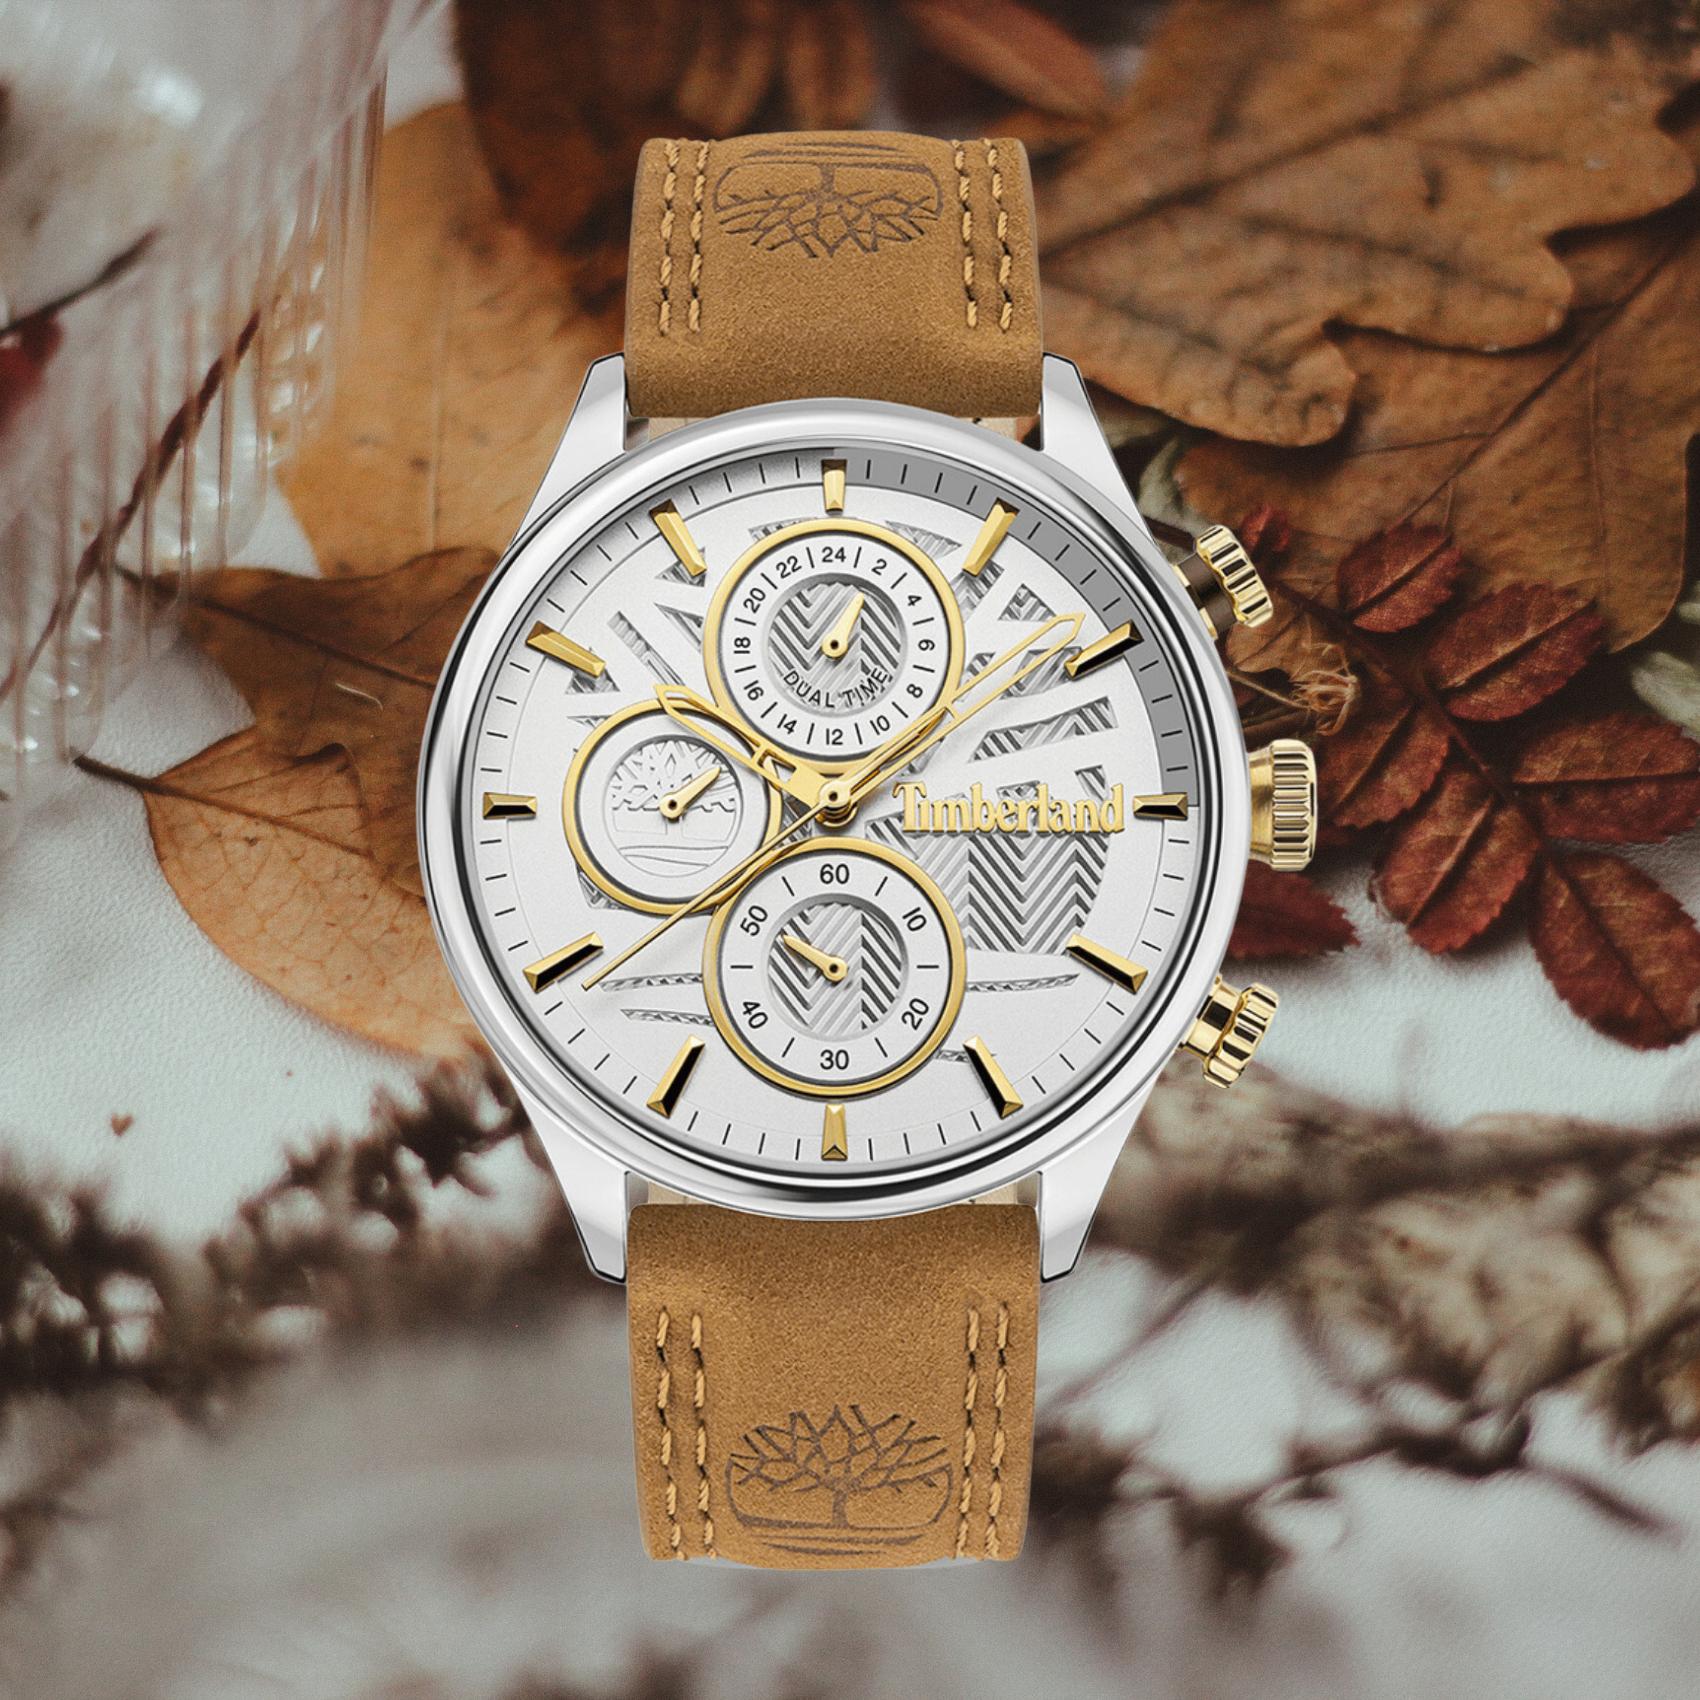 Αντρικό ρολόι Timberland Sheafe TDWLF2104003 με χρονογράφο, ταμπά δερμάτινο λουράκι και άσπρο καντράν διαμέτρου 40mm.